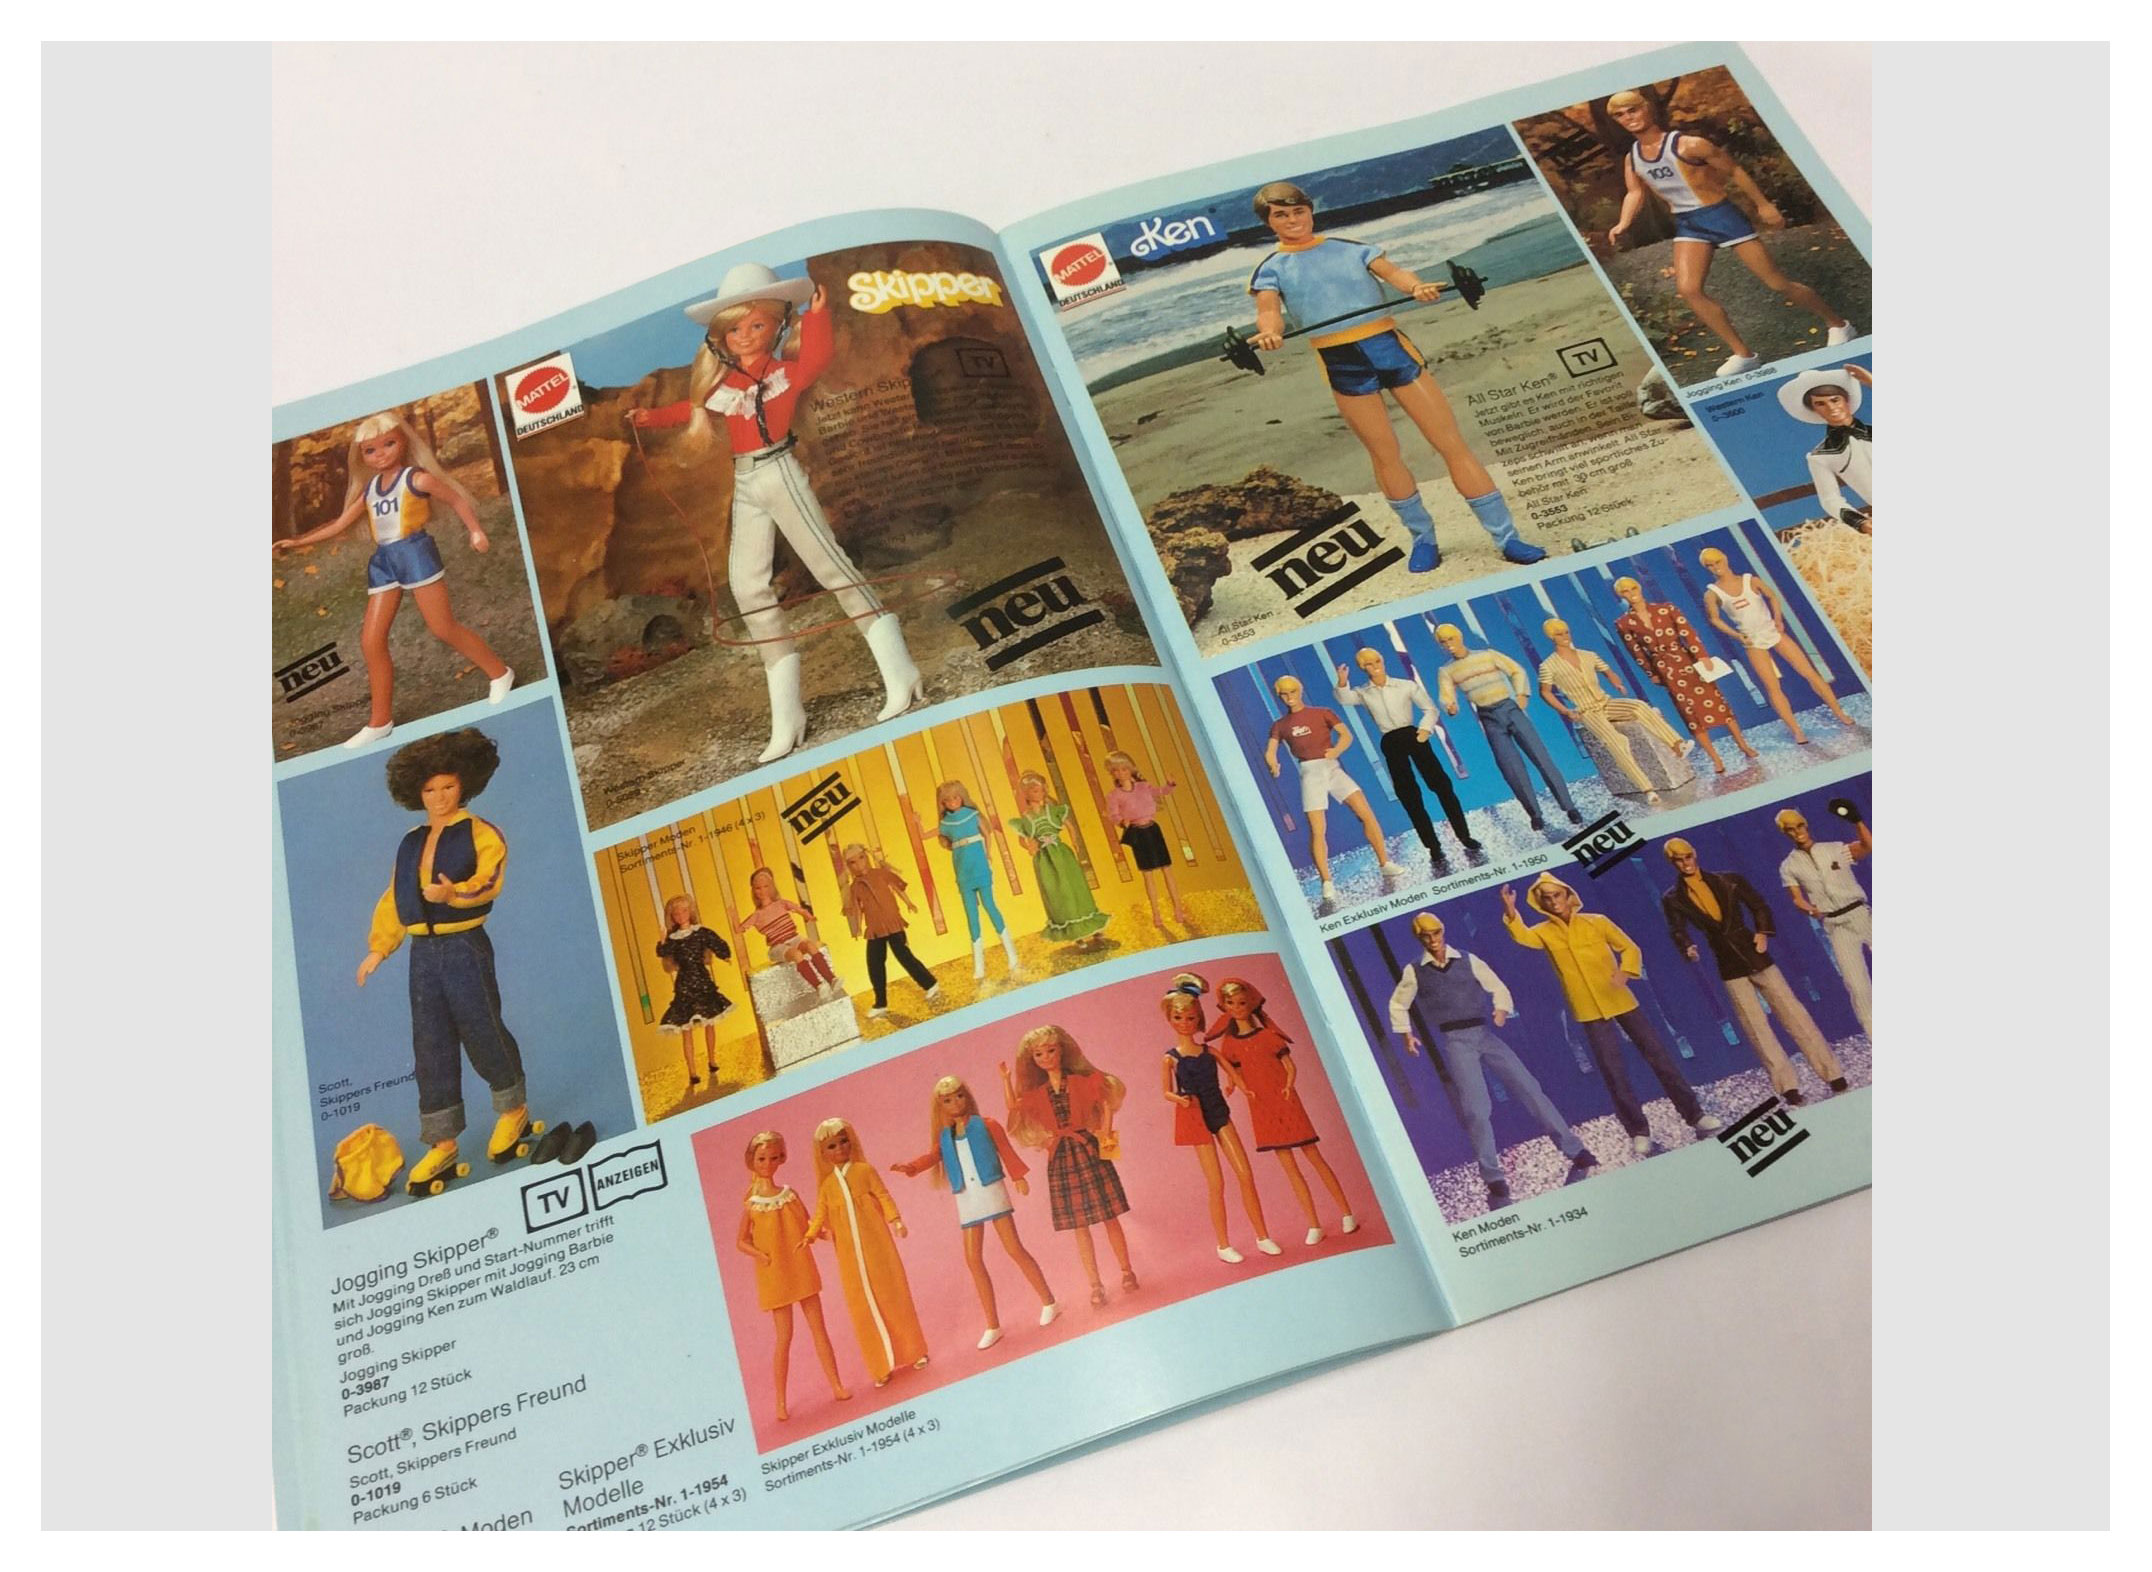 From 1982 German Mattel catalogue